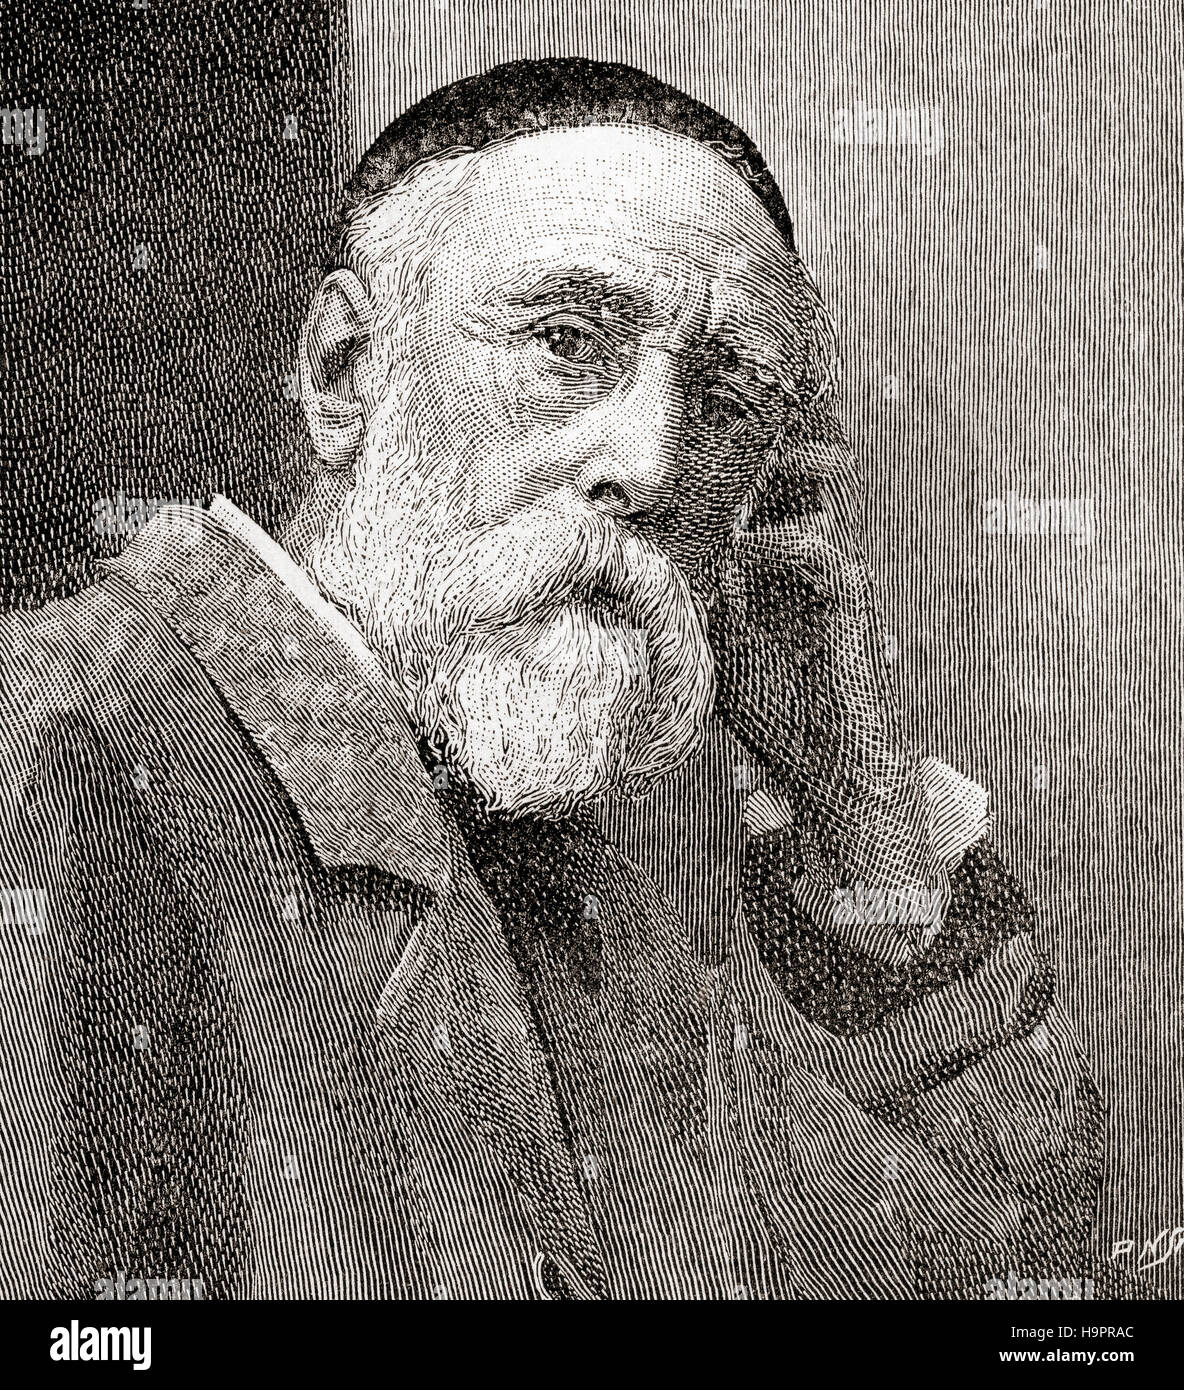 George Frederic Watts, 1817 - 1904. Vittoriana inglese pittore e scultore. Visto qui a 68 anni. Da The Strand Magazine, Vol I da gennaio a giugno, 1891. Foto Stock